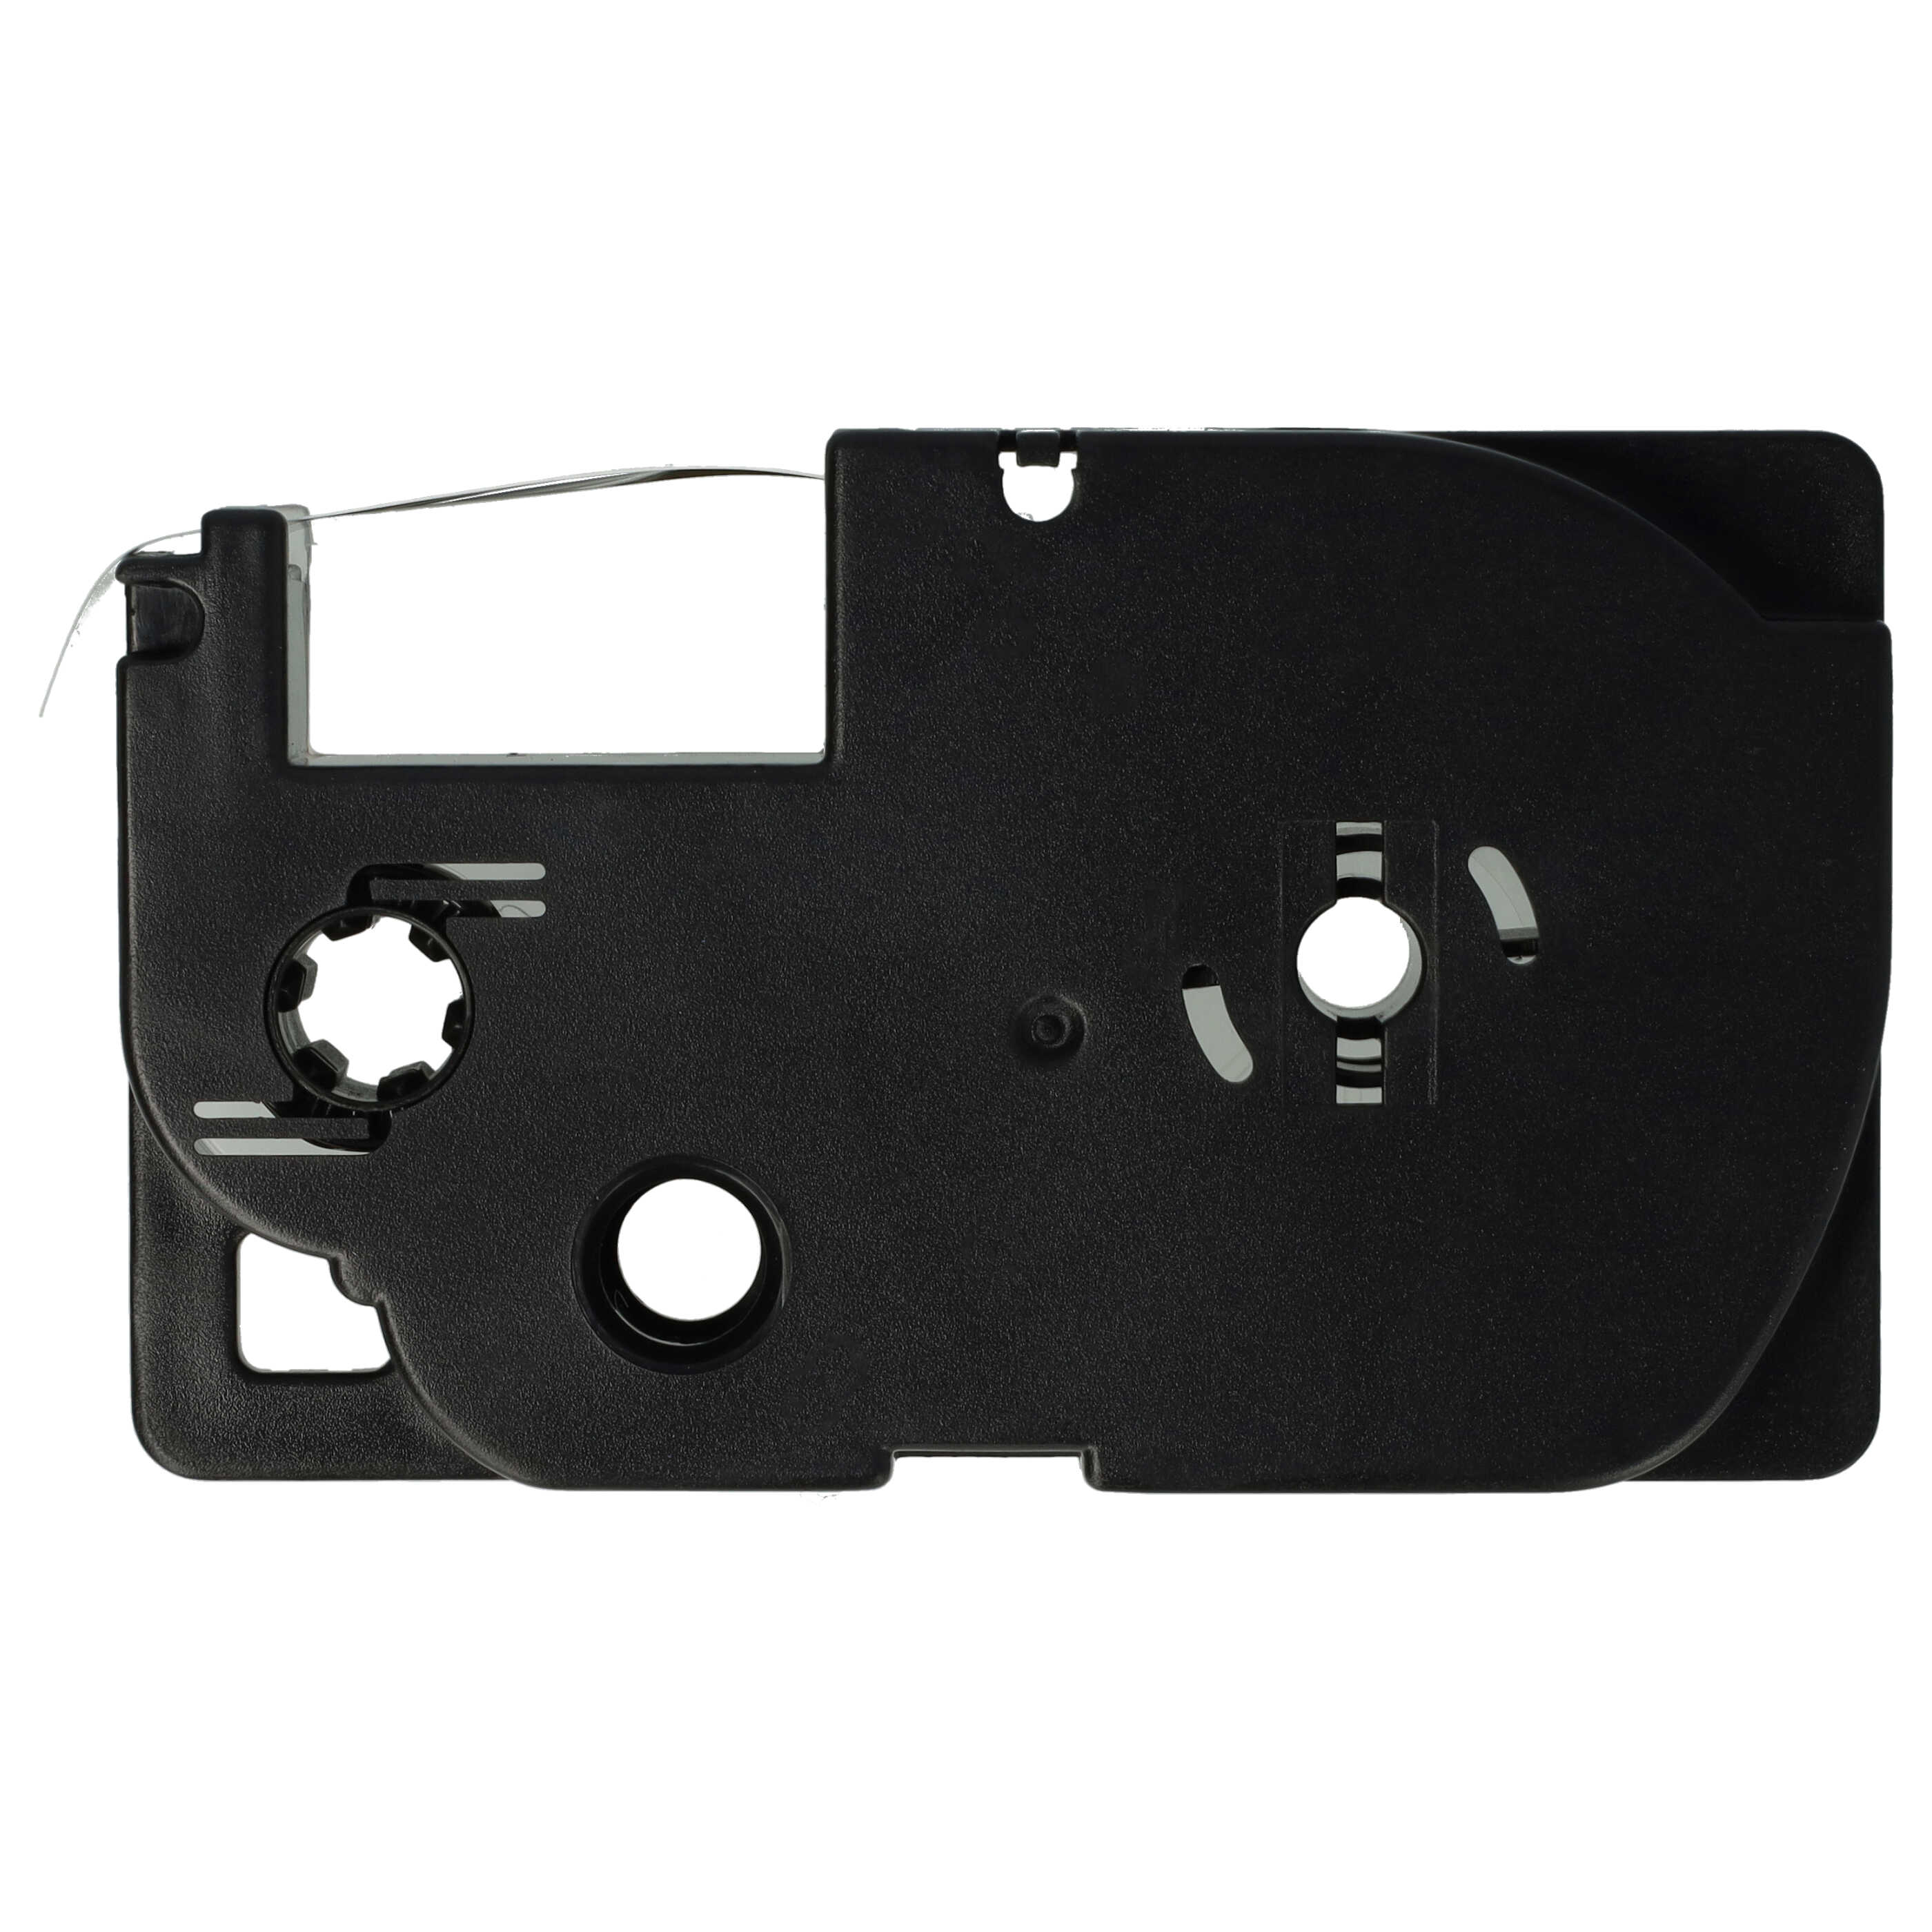 5x Cassettes à ruban remplacent Casio XR-9WE1 - 9mm lettrage Noir ruban Blanc